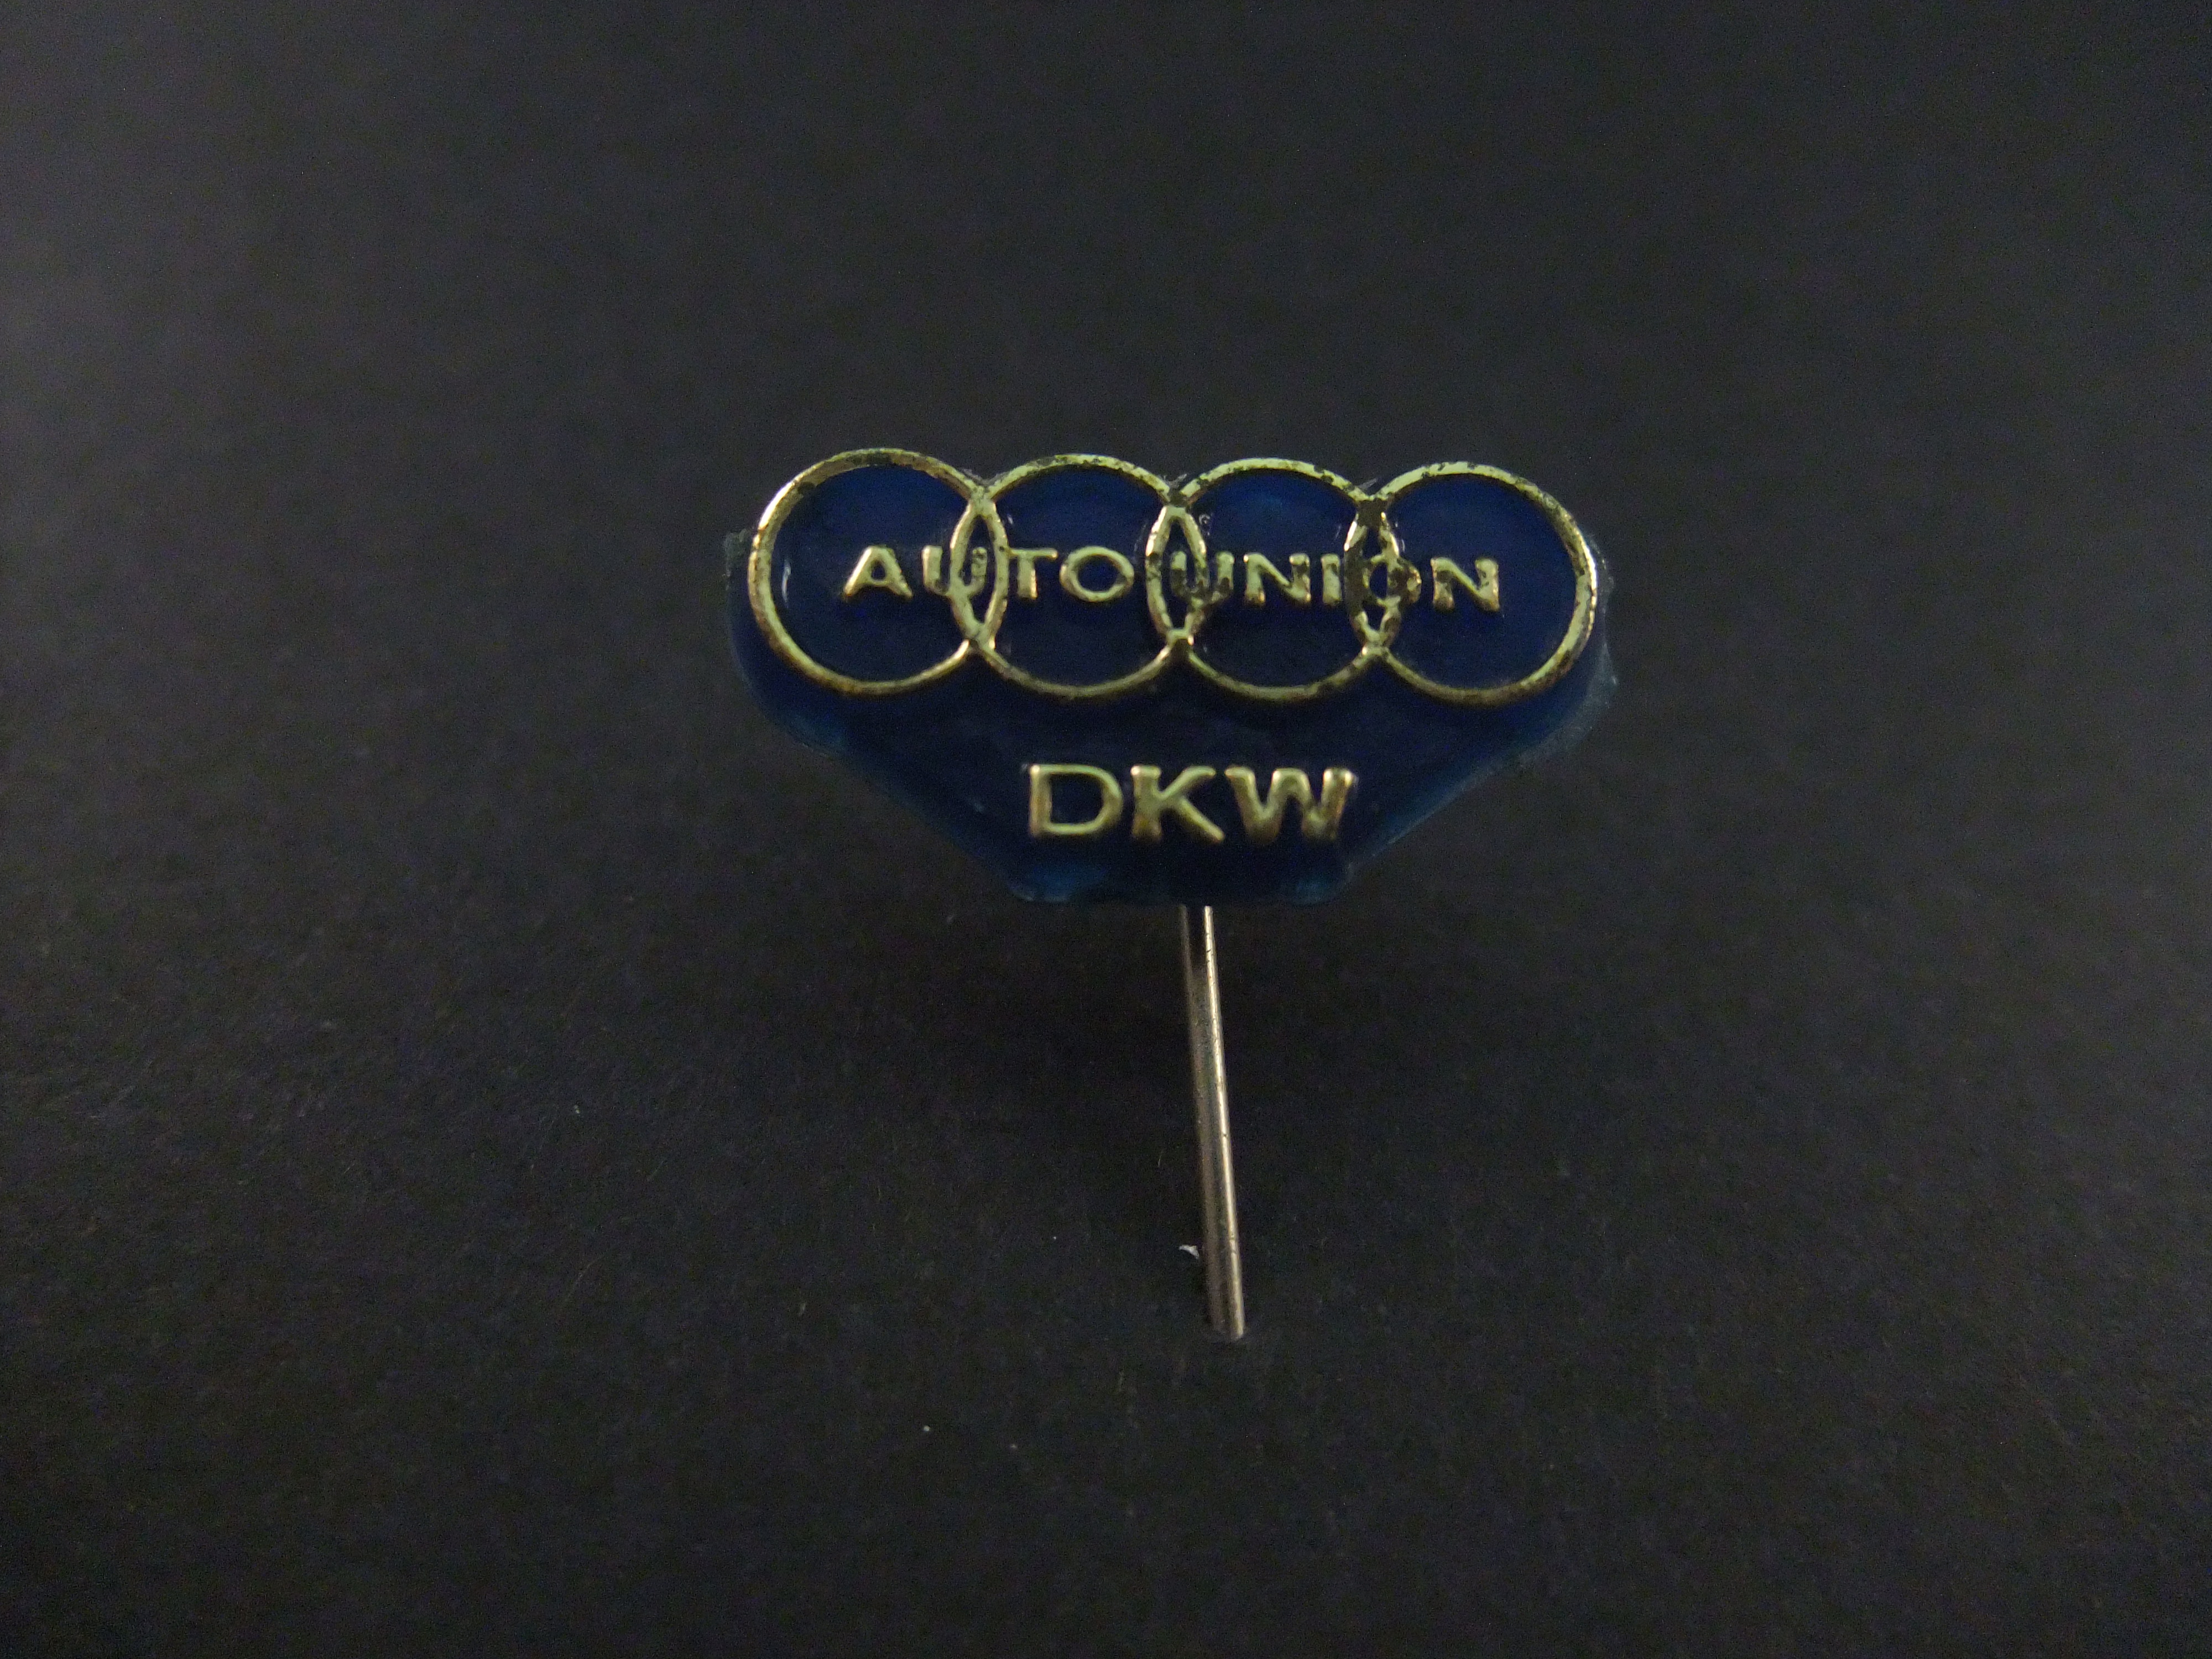 Auto Union DKW logo